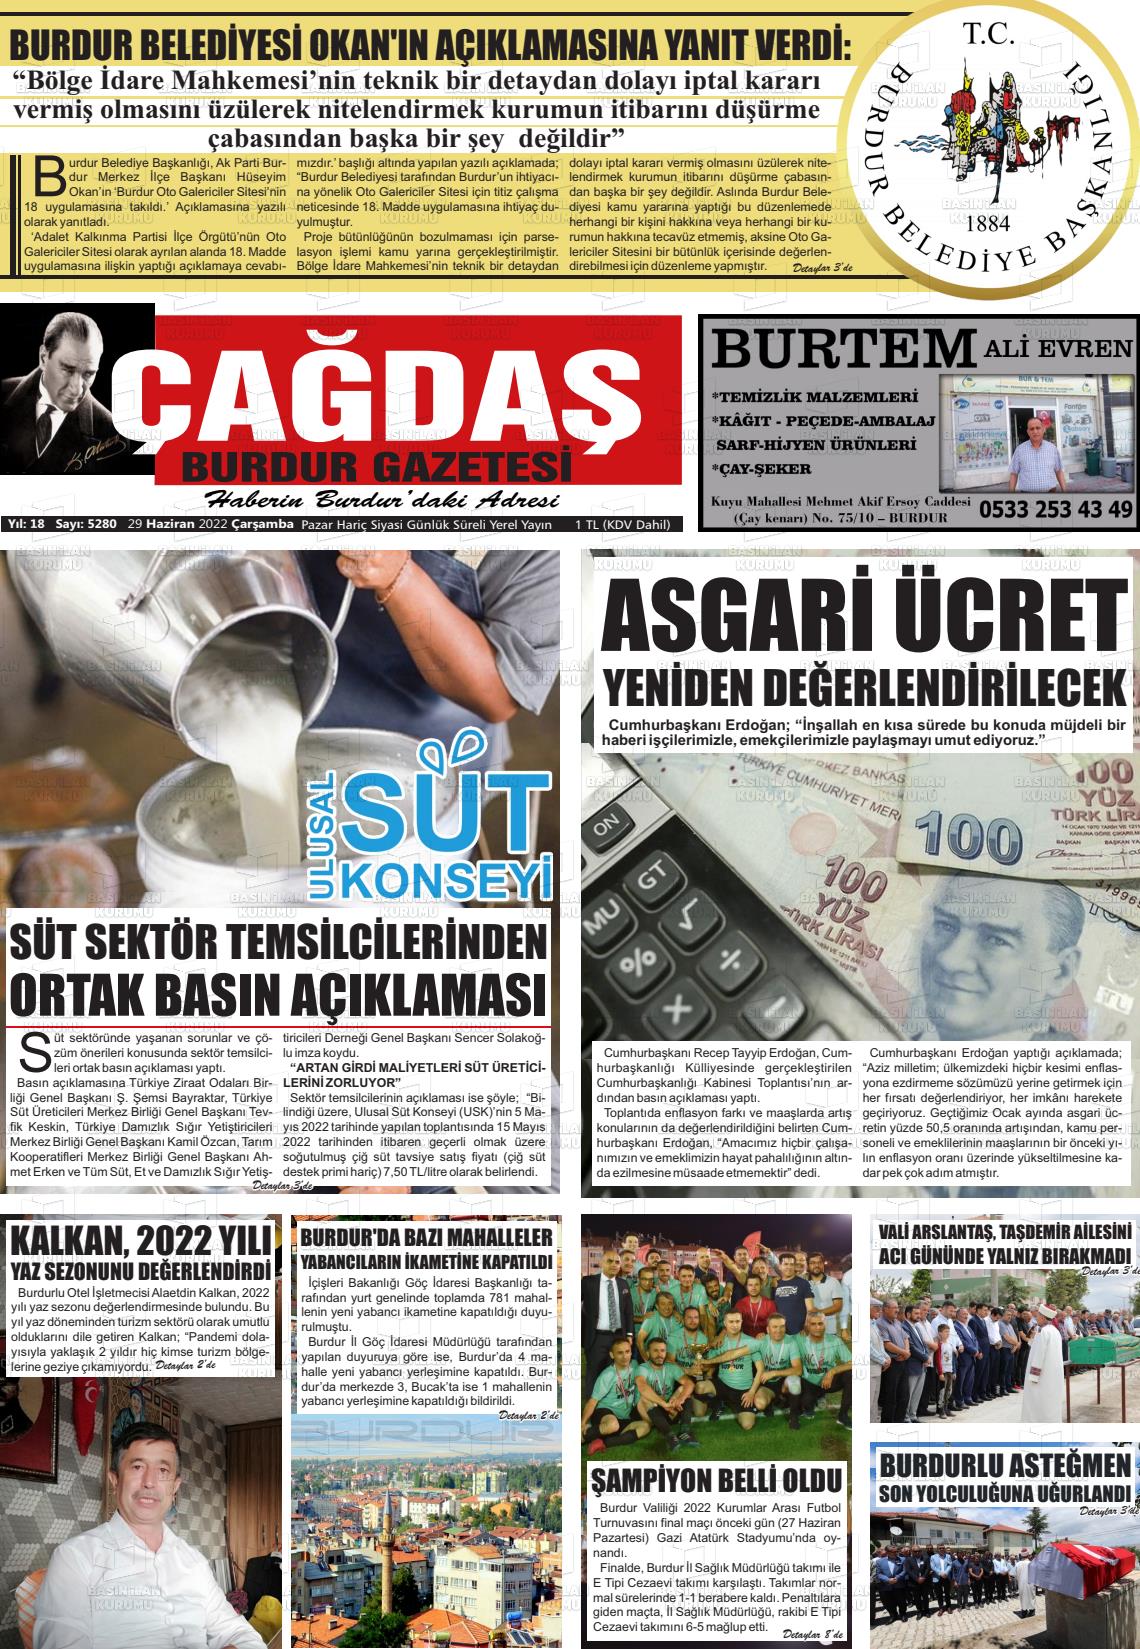 29 Haziran 2022 Çağdaş Burdur Gazete Manşeti